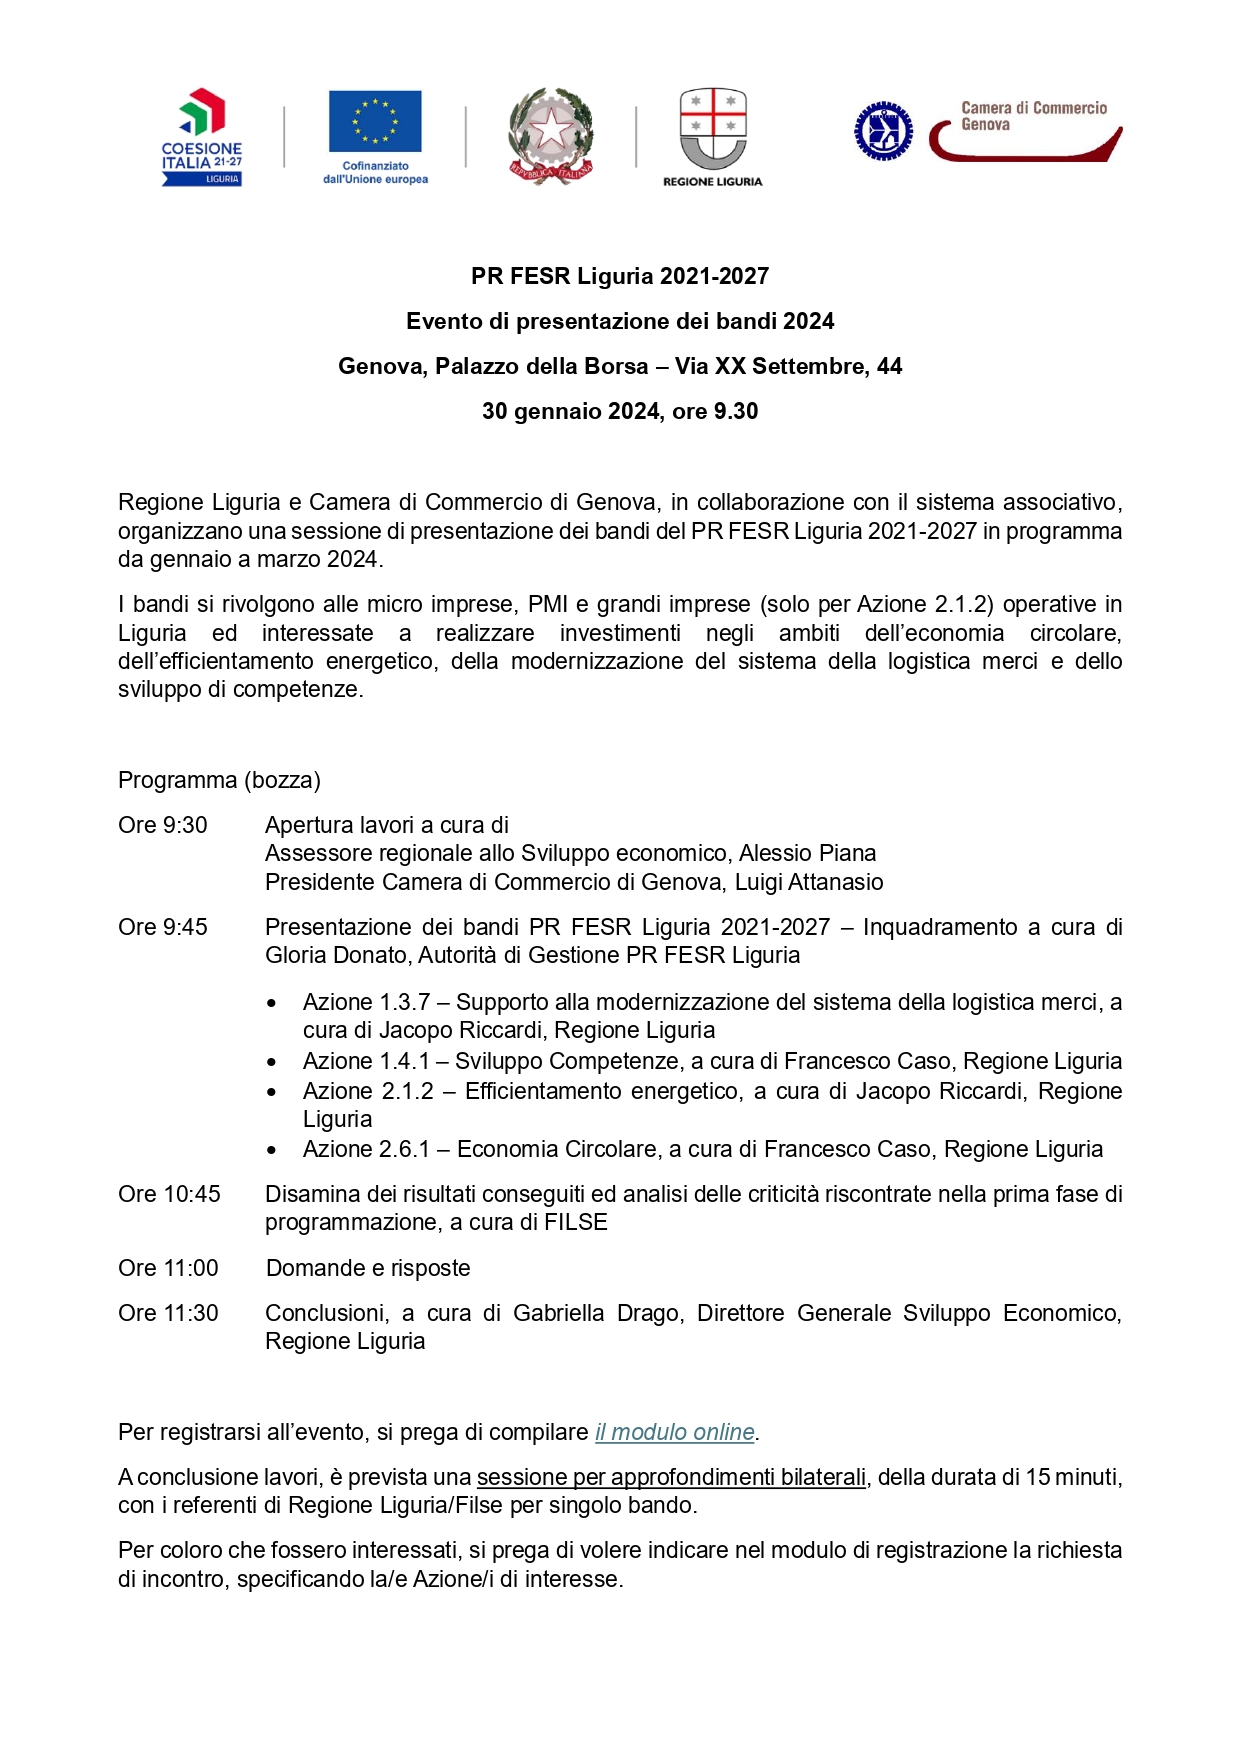 Programma evento presentazione bandi di finanziamento a Palazzo della Borsa del 30 gennaio 2024